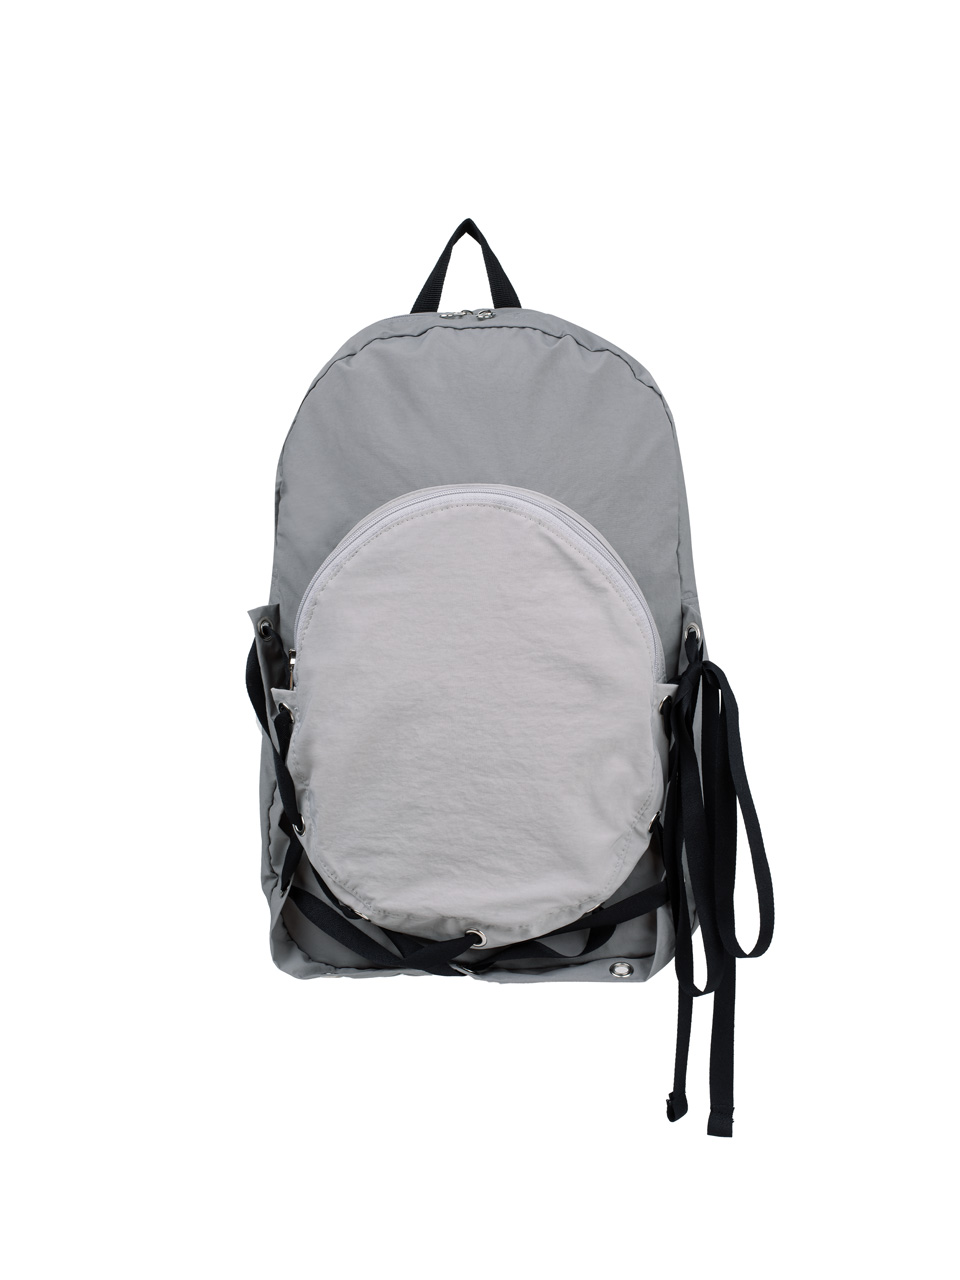 Nest Backpack - Gray